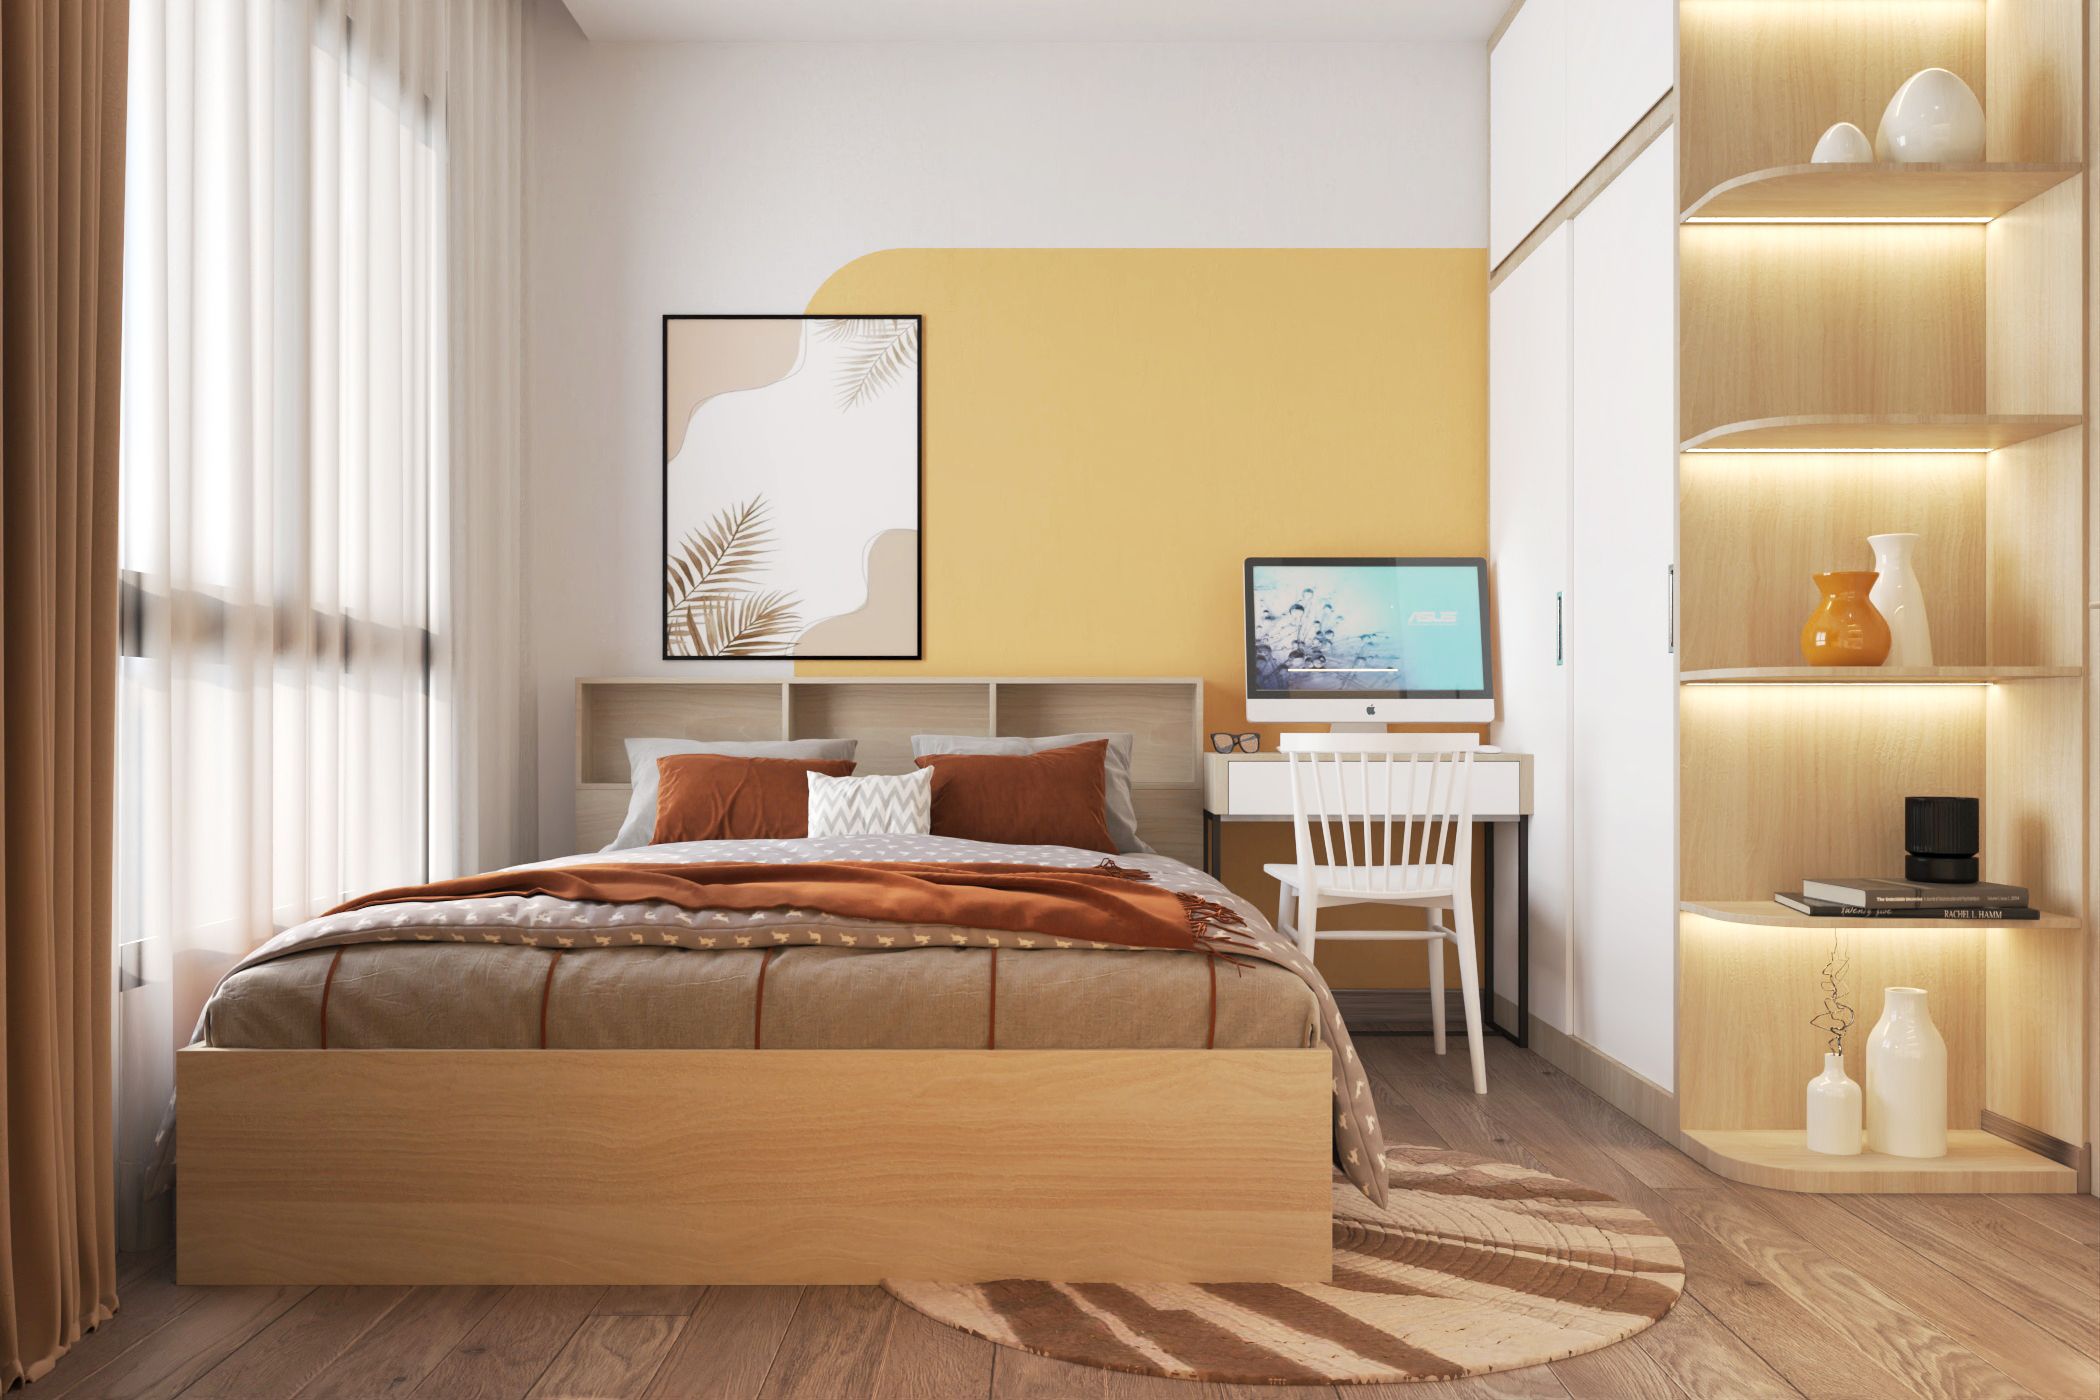 Tông màu vàng thể hiện sự rạng ngời và vui vẻ, tạo không gian phòng ngủ ấn tượng và lôi cuốn.